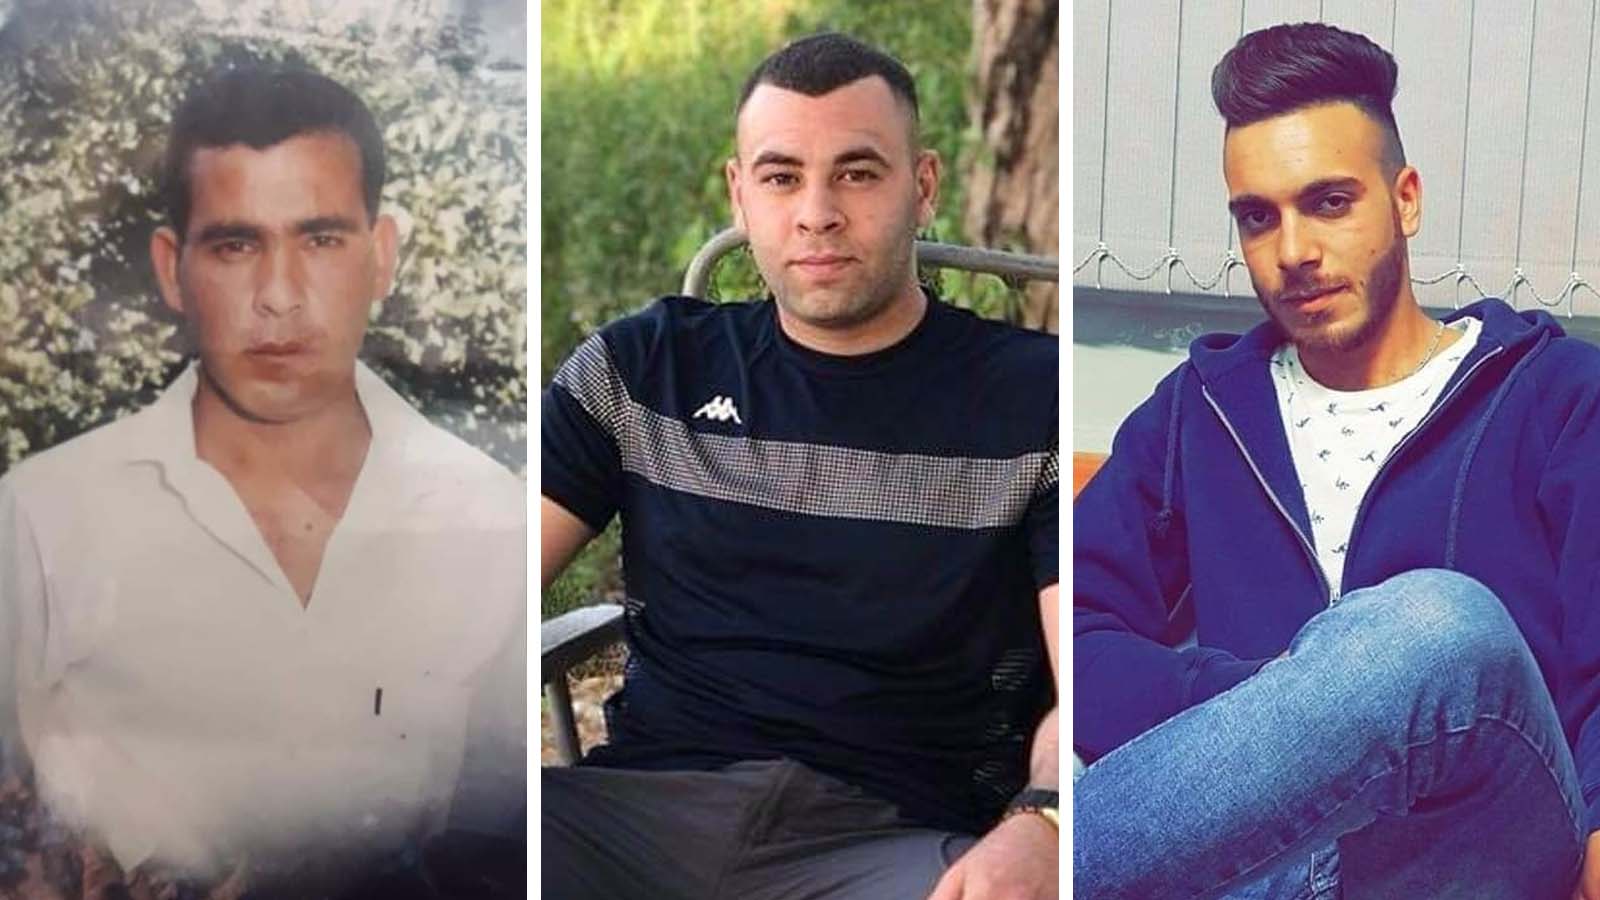 שלושת ההרוגים בתאונות הבניה שאירעו ב-15 באוקטובר 2018. מימין: מוחמד נדאל ברגות, מחמד אכרם שואהנה, נעמאן ח'ליל עבאס דעדוש